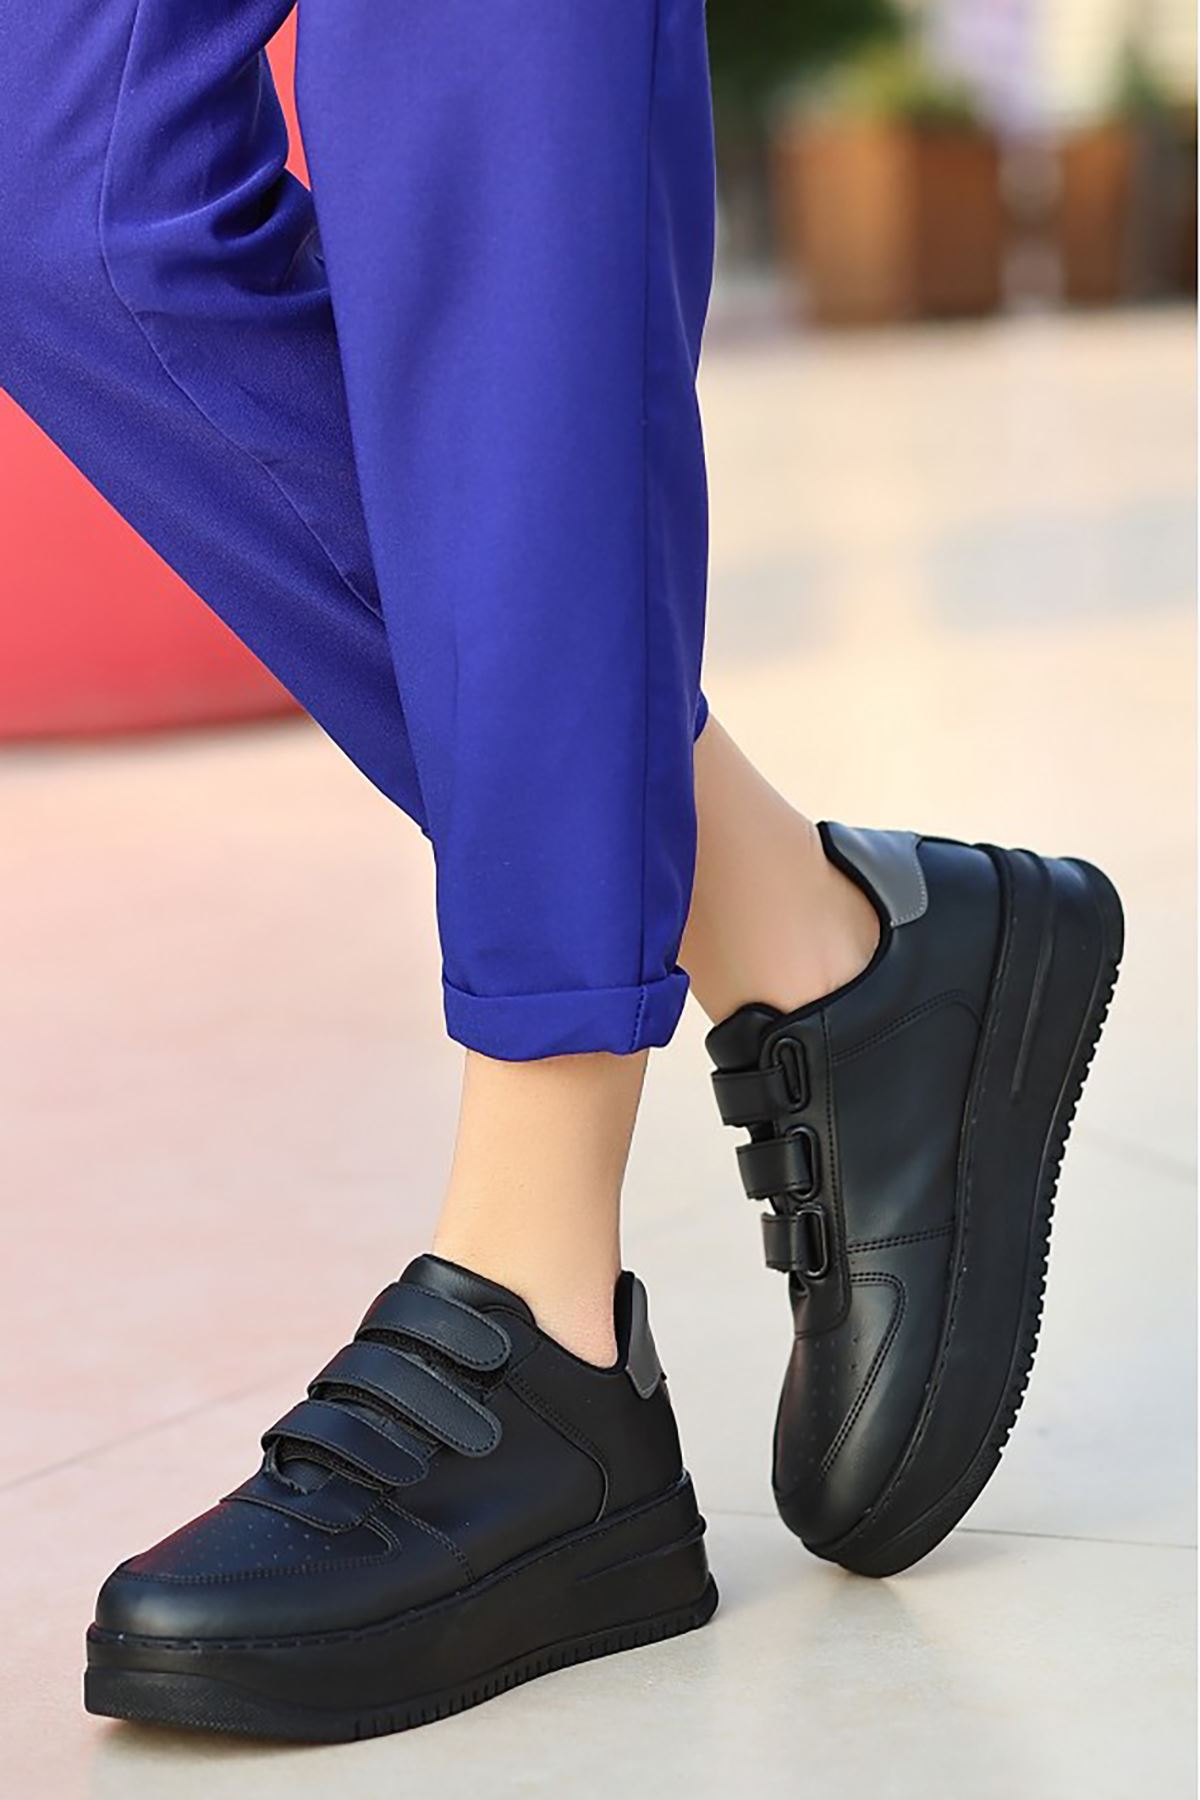 Mida Shoes ERBPagin Siyah Cırt Cırtlı Kadın Spor Ayakkabı